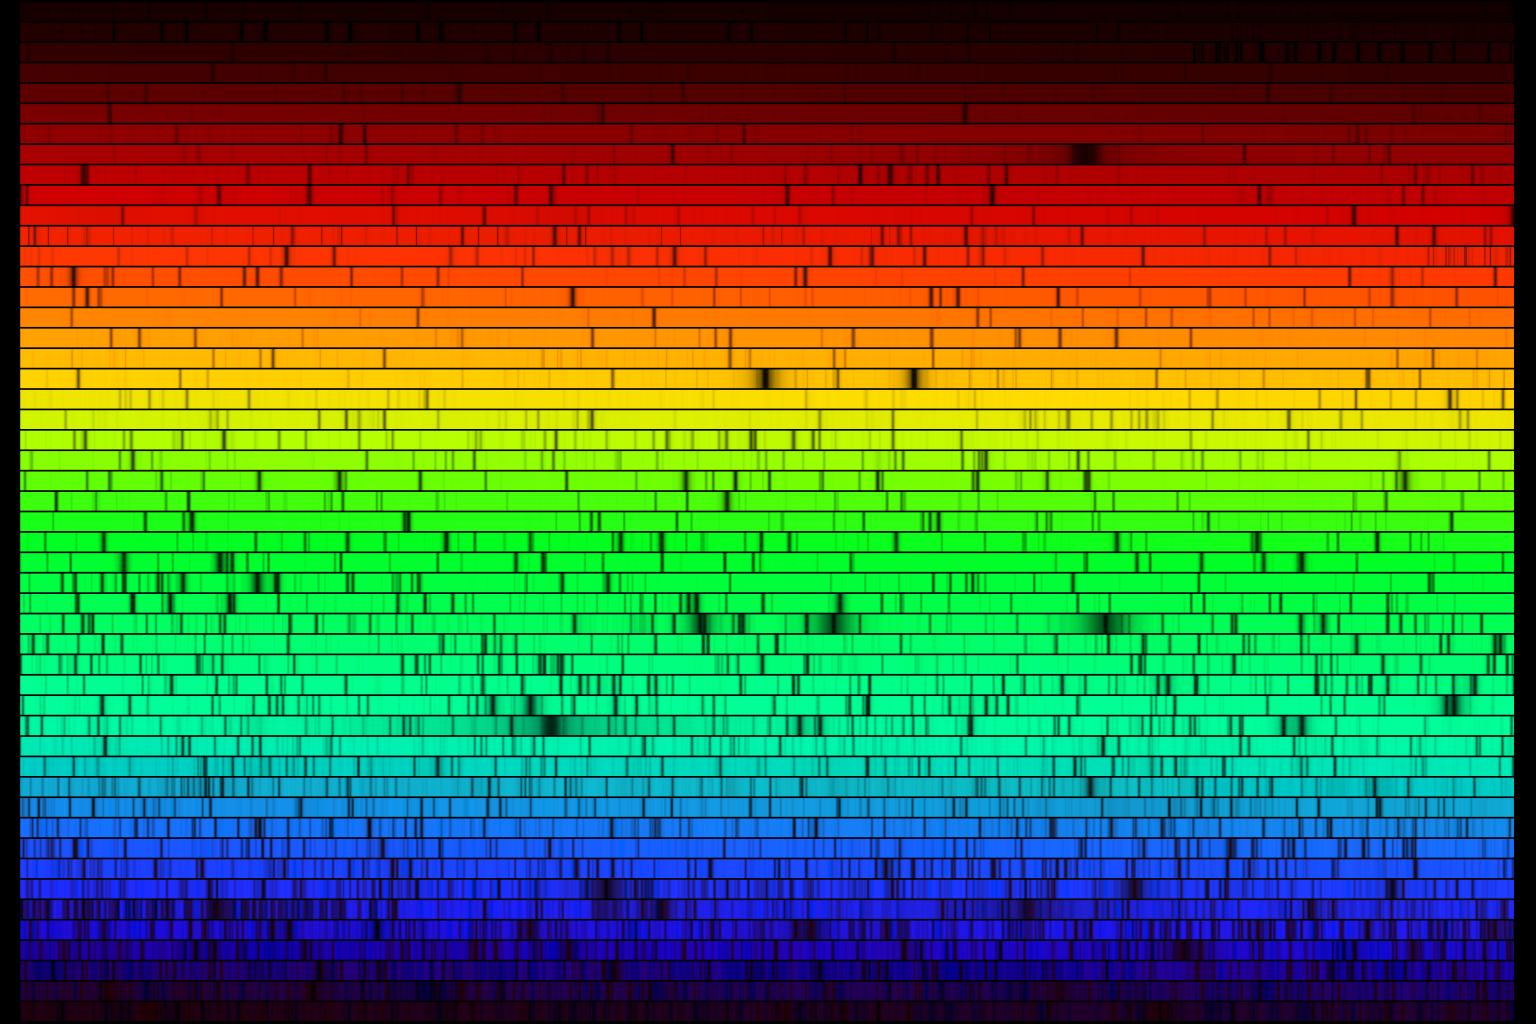 Slunecn spektrum